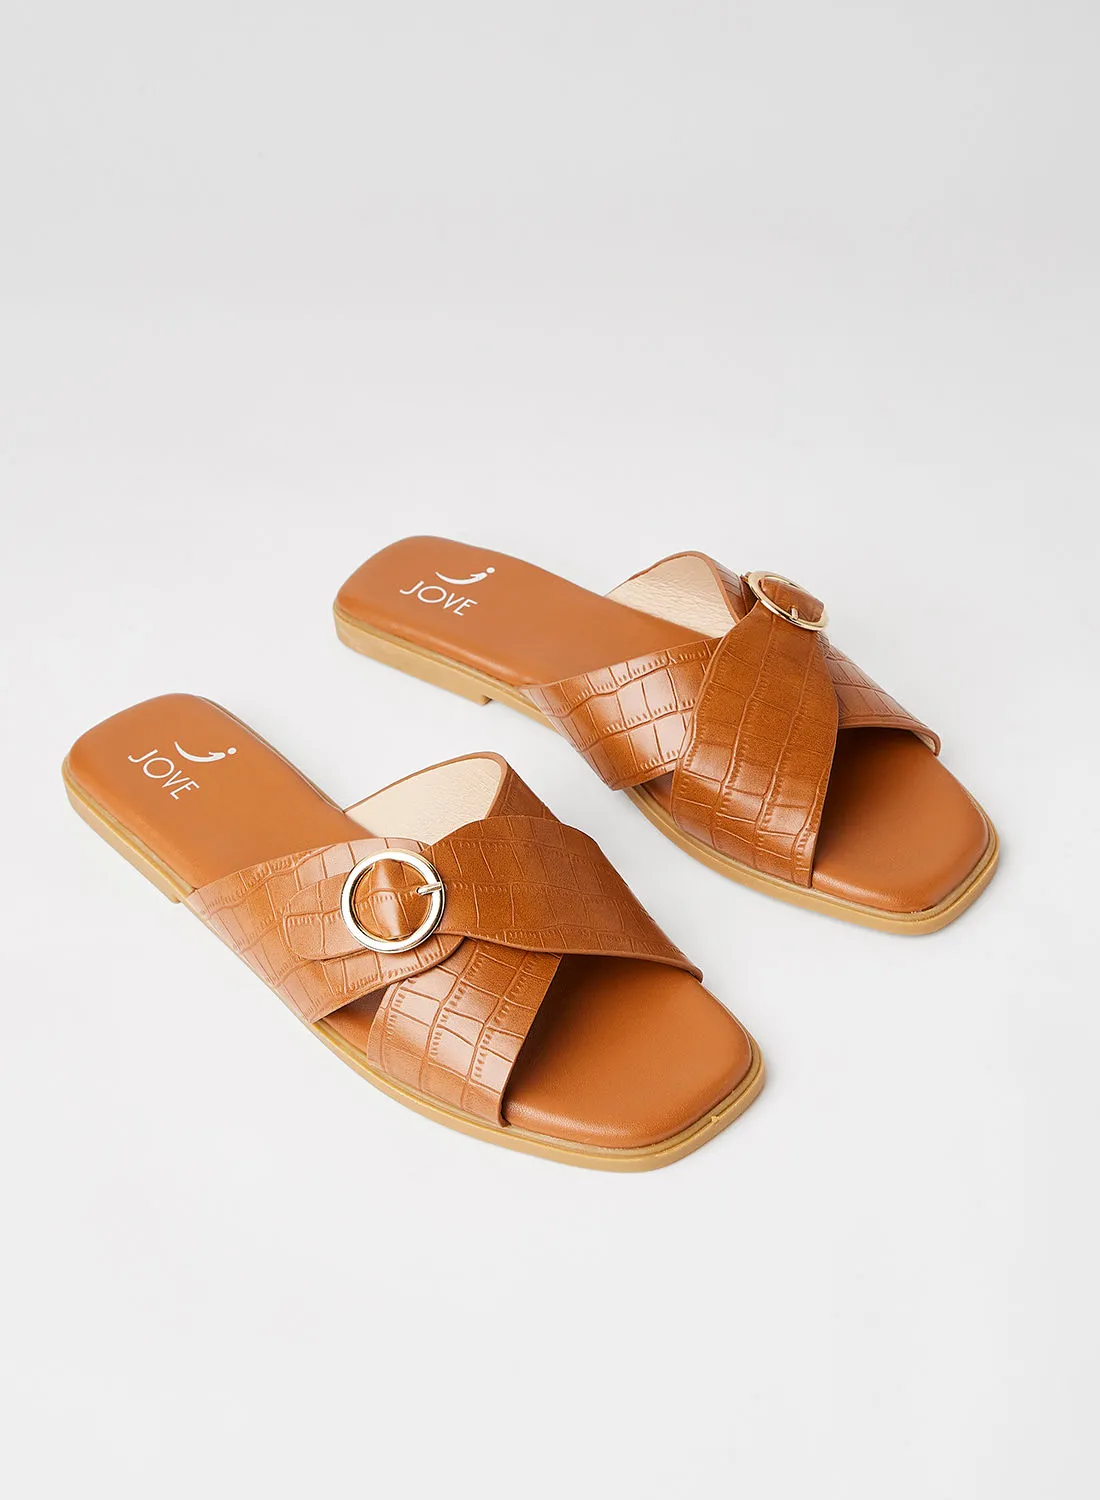 Jove Open Toe Flat Sandals Tan